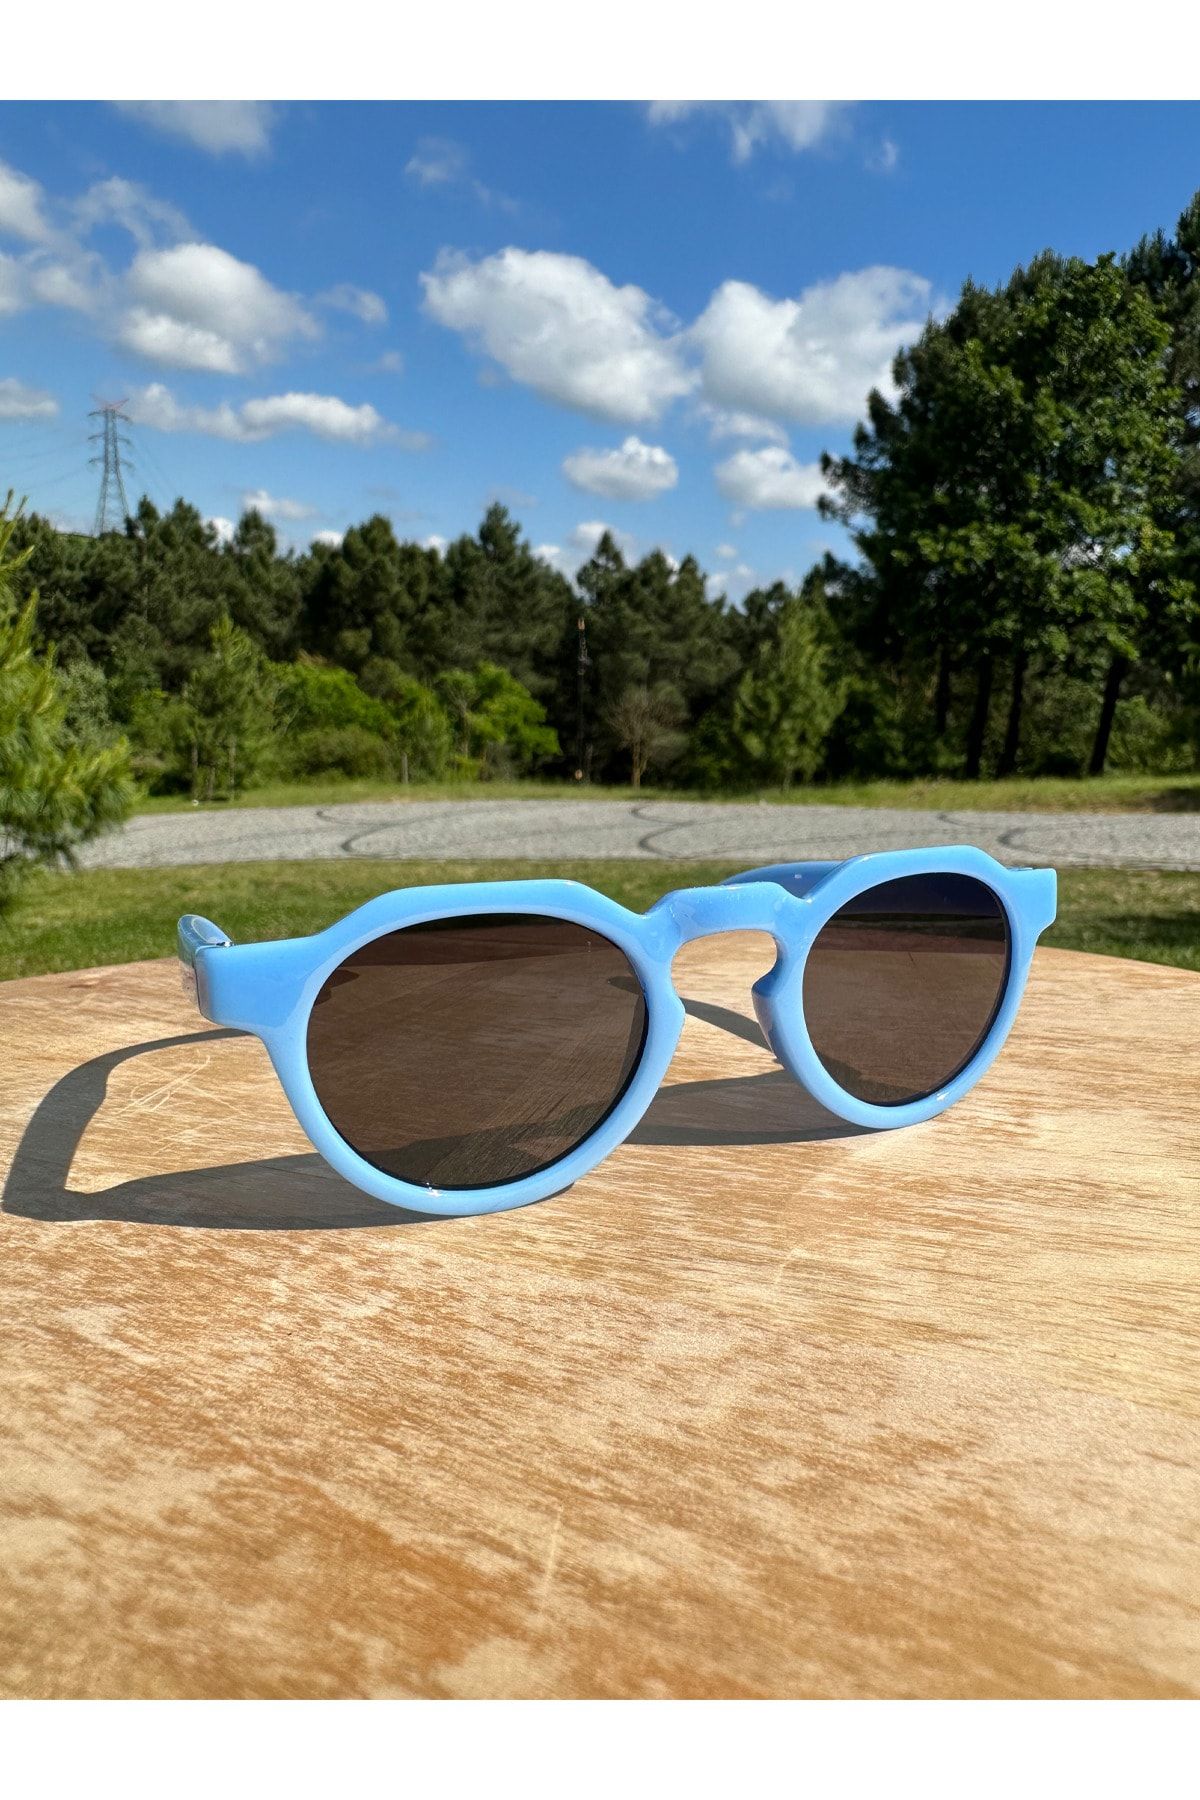 VisionGlasses Çocuk Güneş Gözlüğü Oval Model Mavi Renk